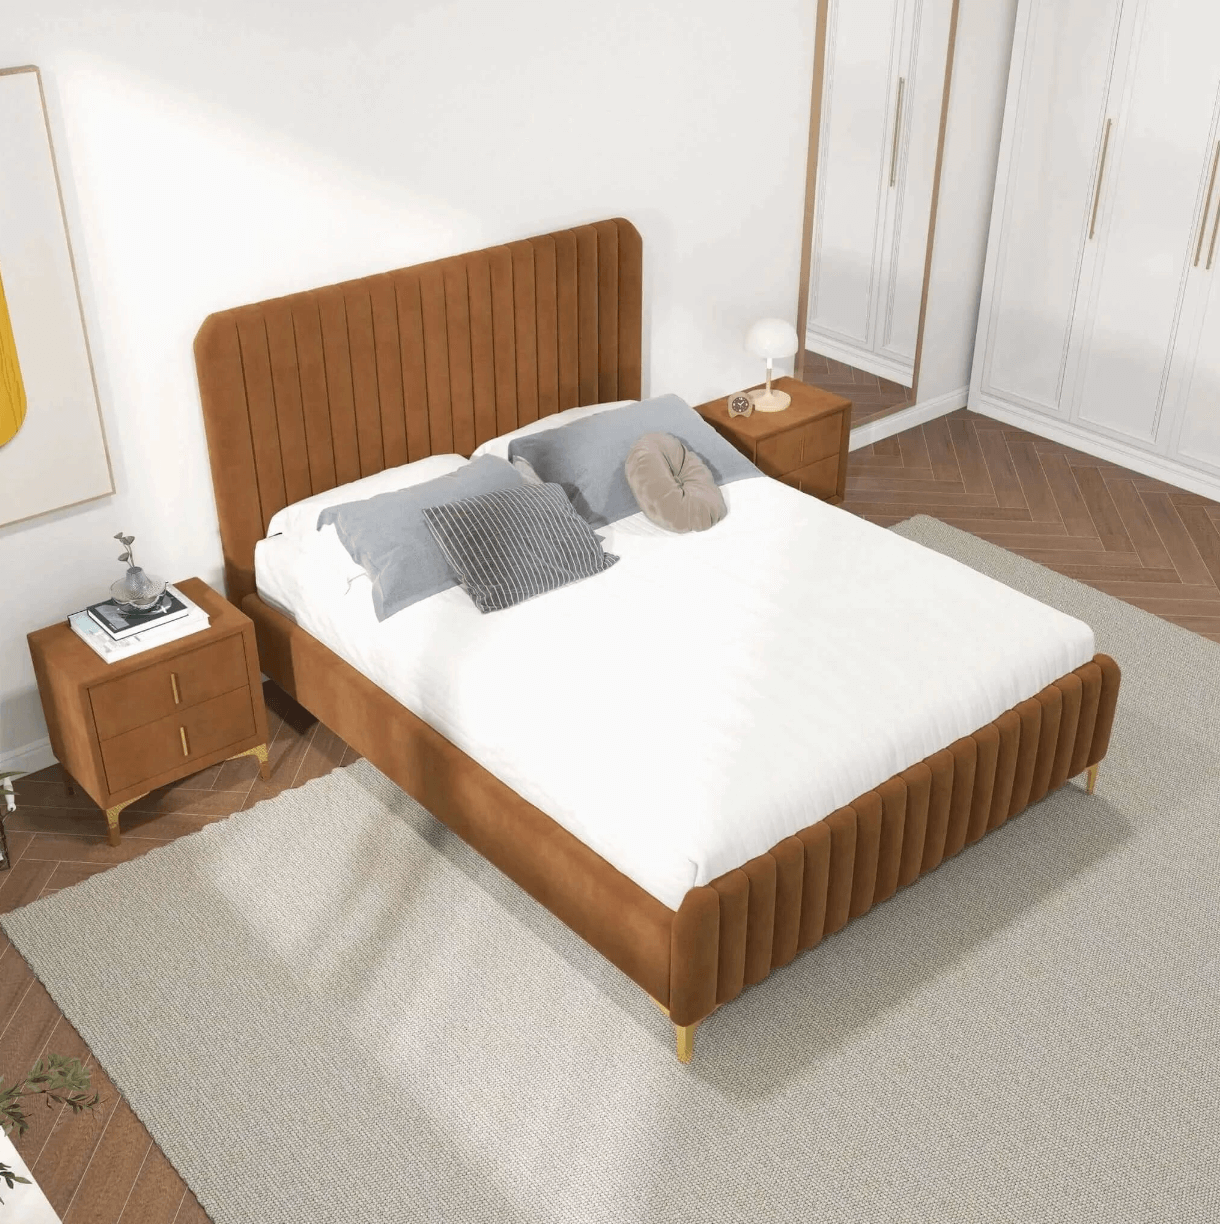 Bethany Velvet Upholstered Channel Tufted Platform Bed - Revel Sofa 